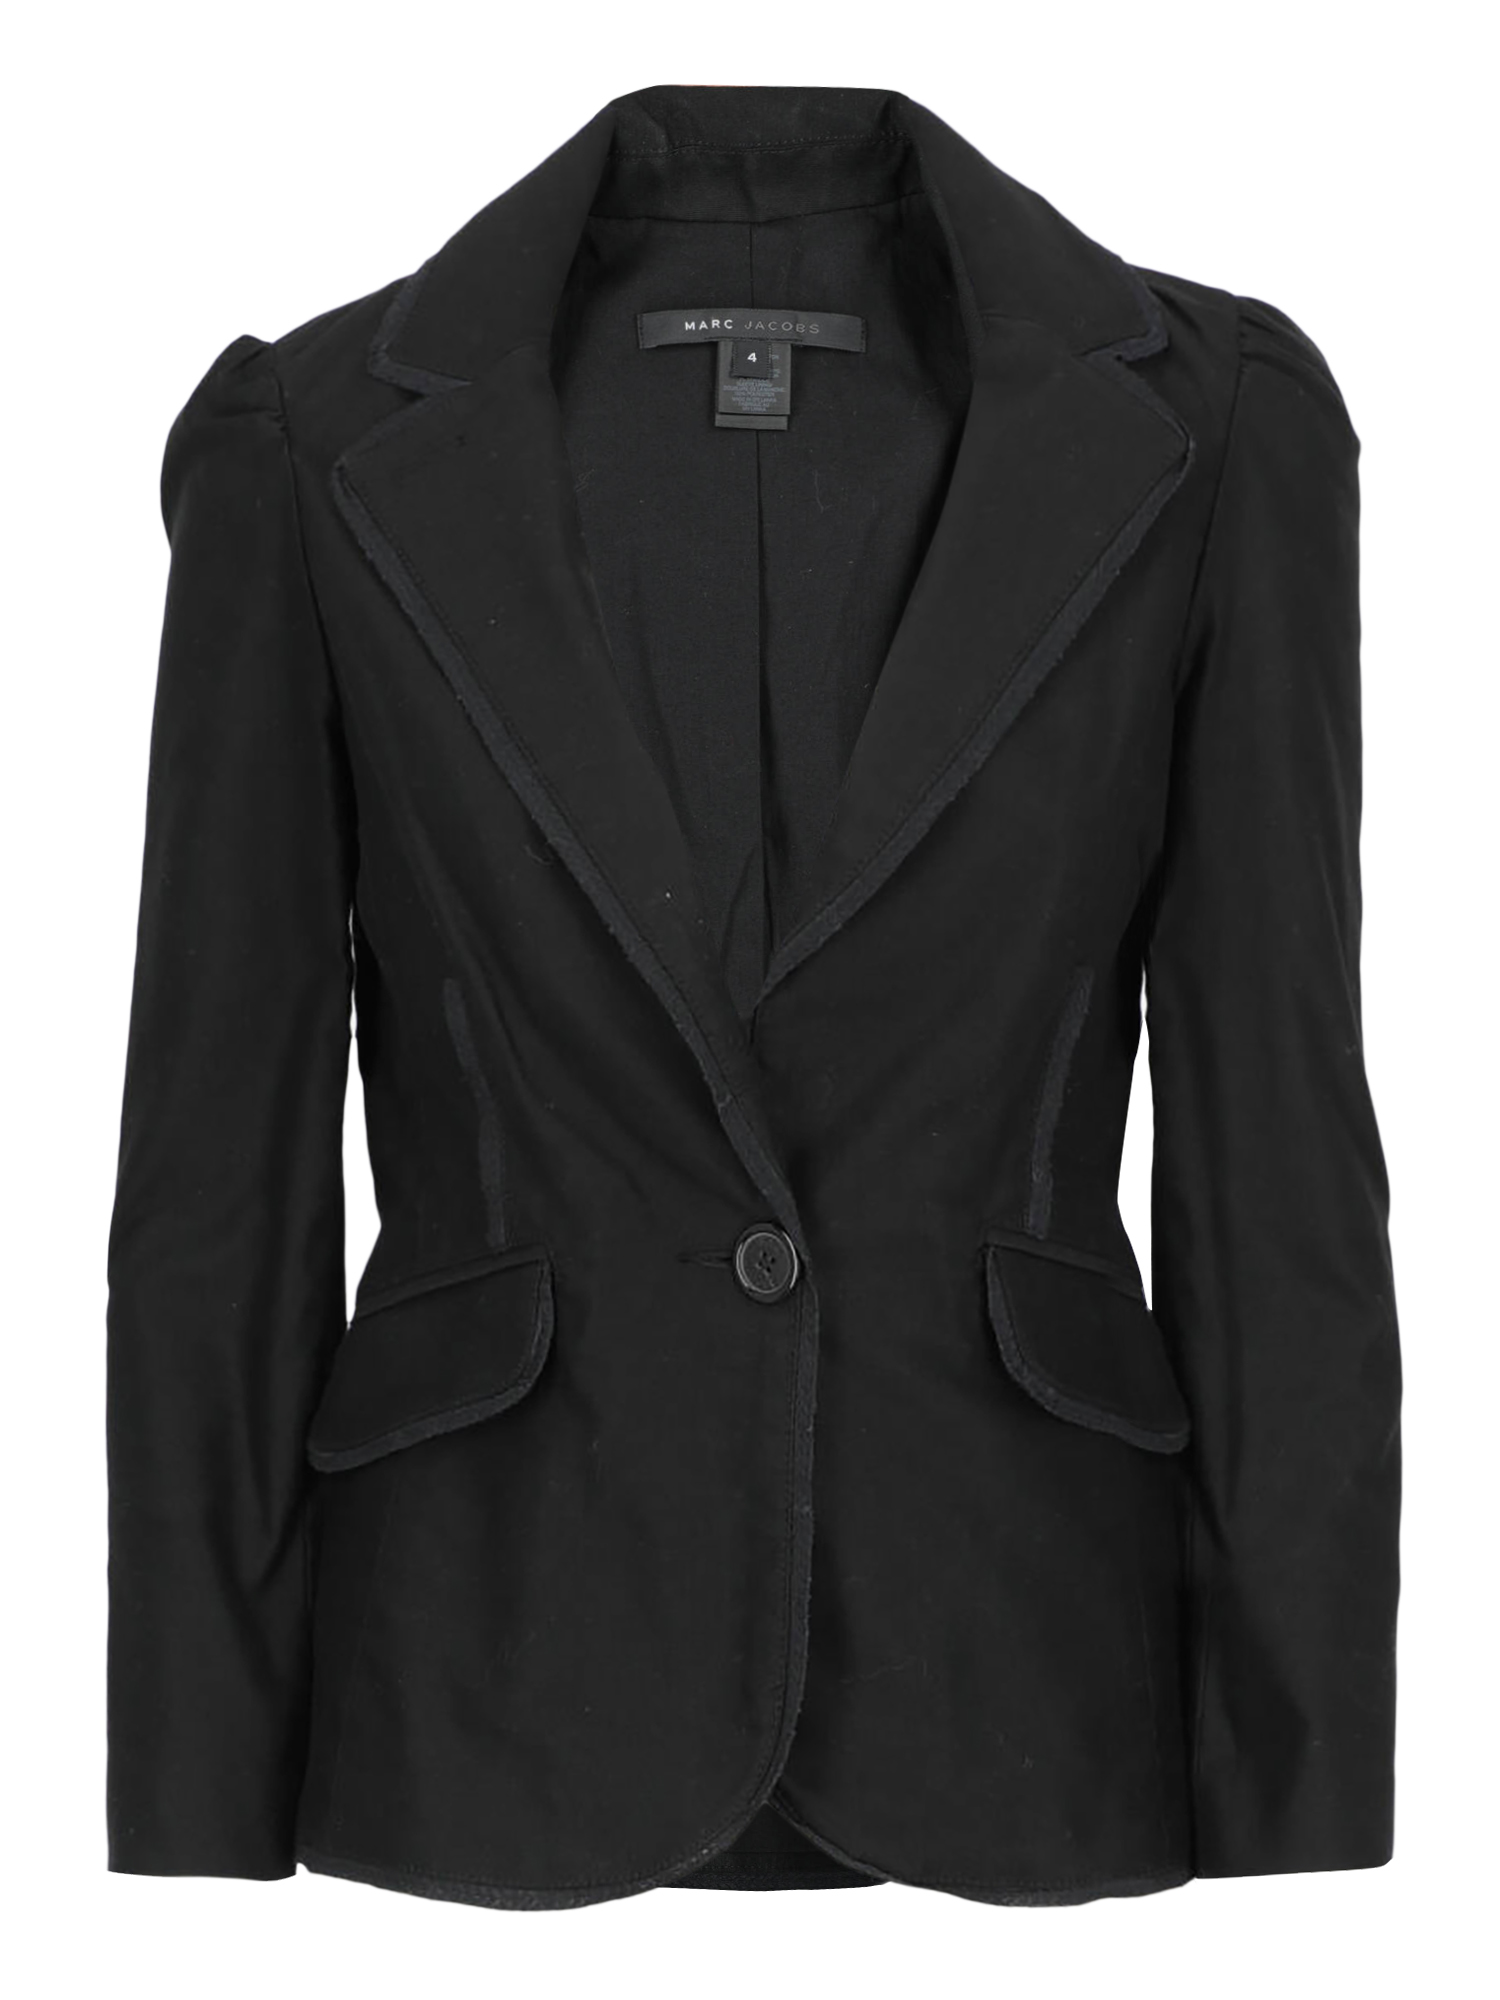 Vestes Pour Femme - Marc Jacobs - En Cotton Black - Taille:  -